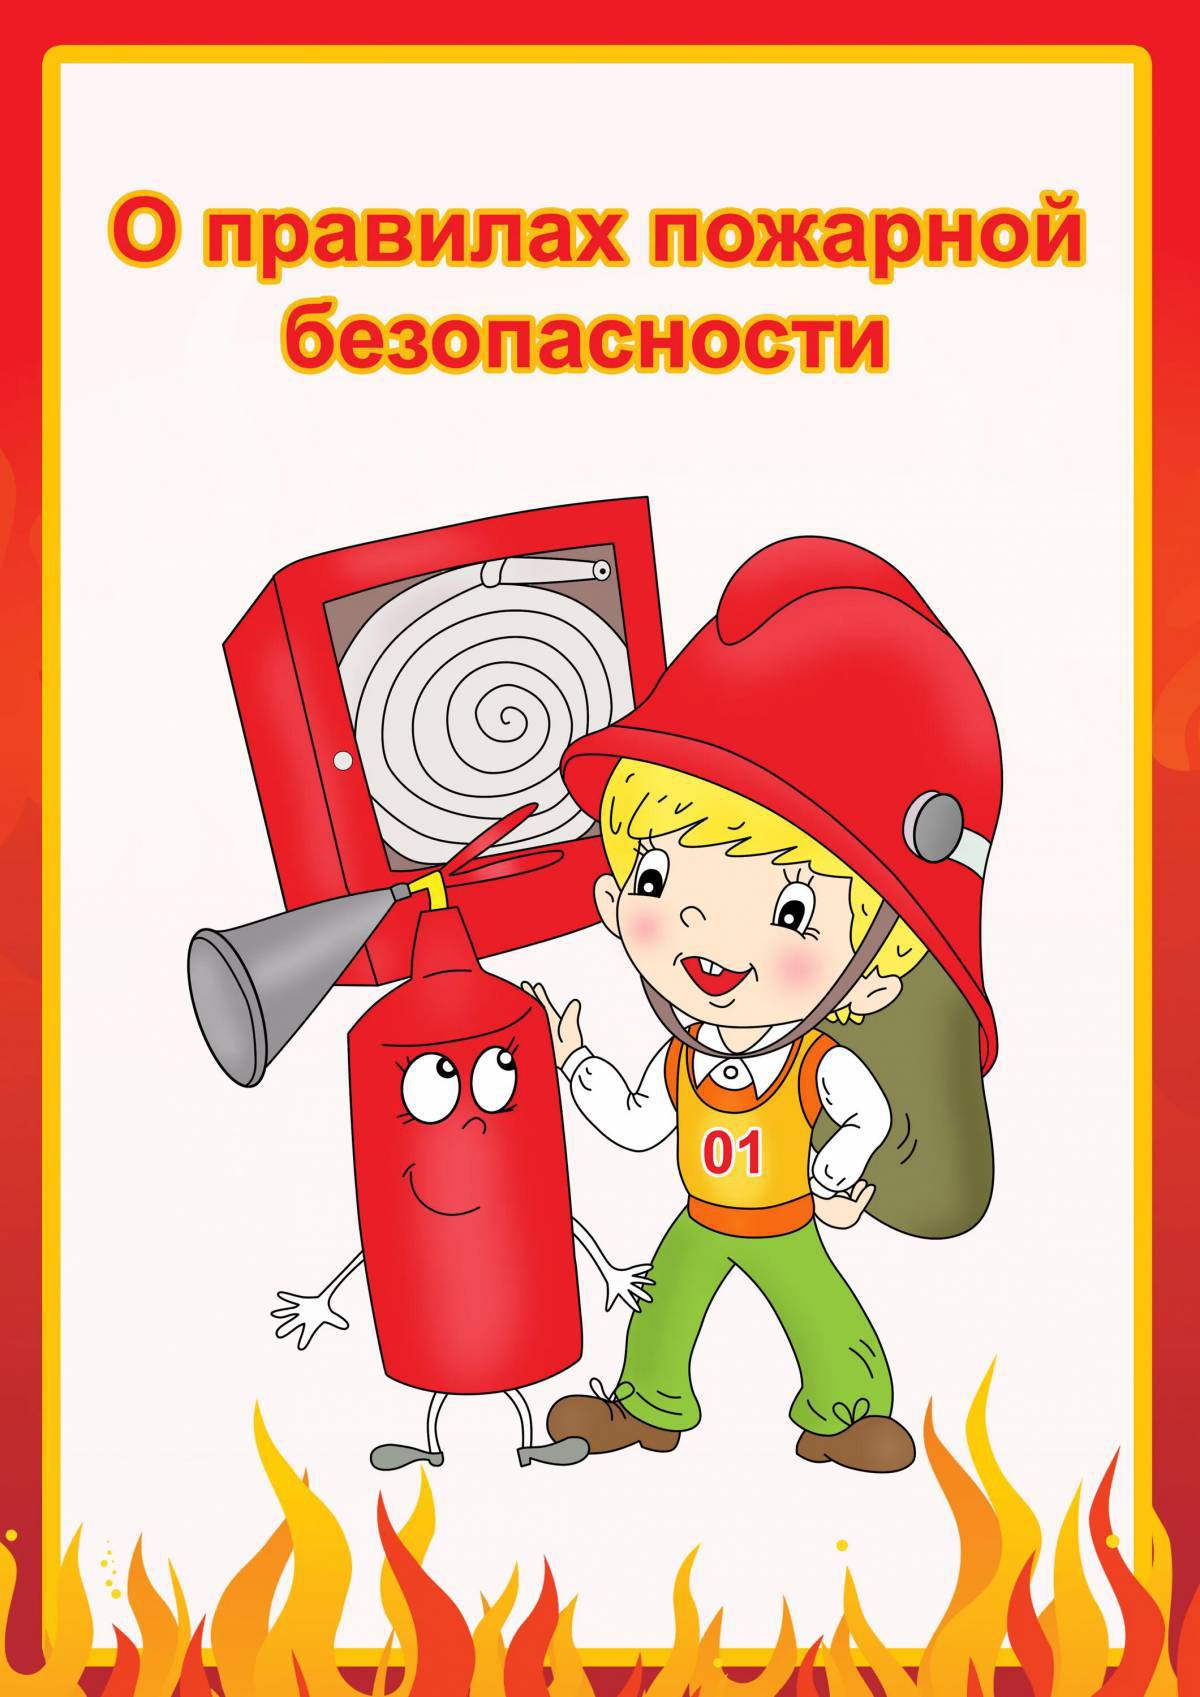 Пожарная безопасность для детей в детском саду #16